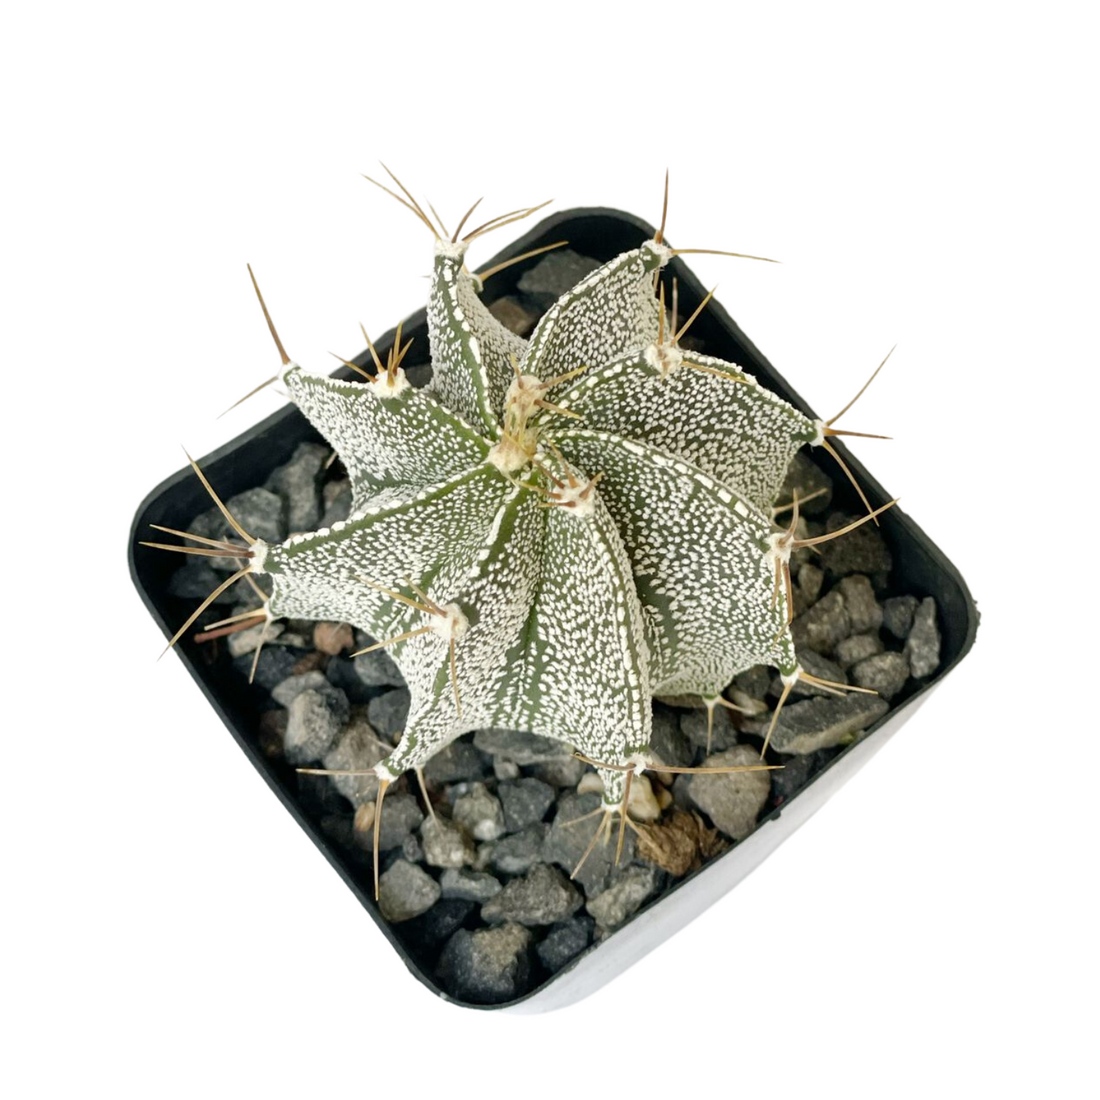 Astrophytum ornatum o Cactus estrella